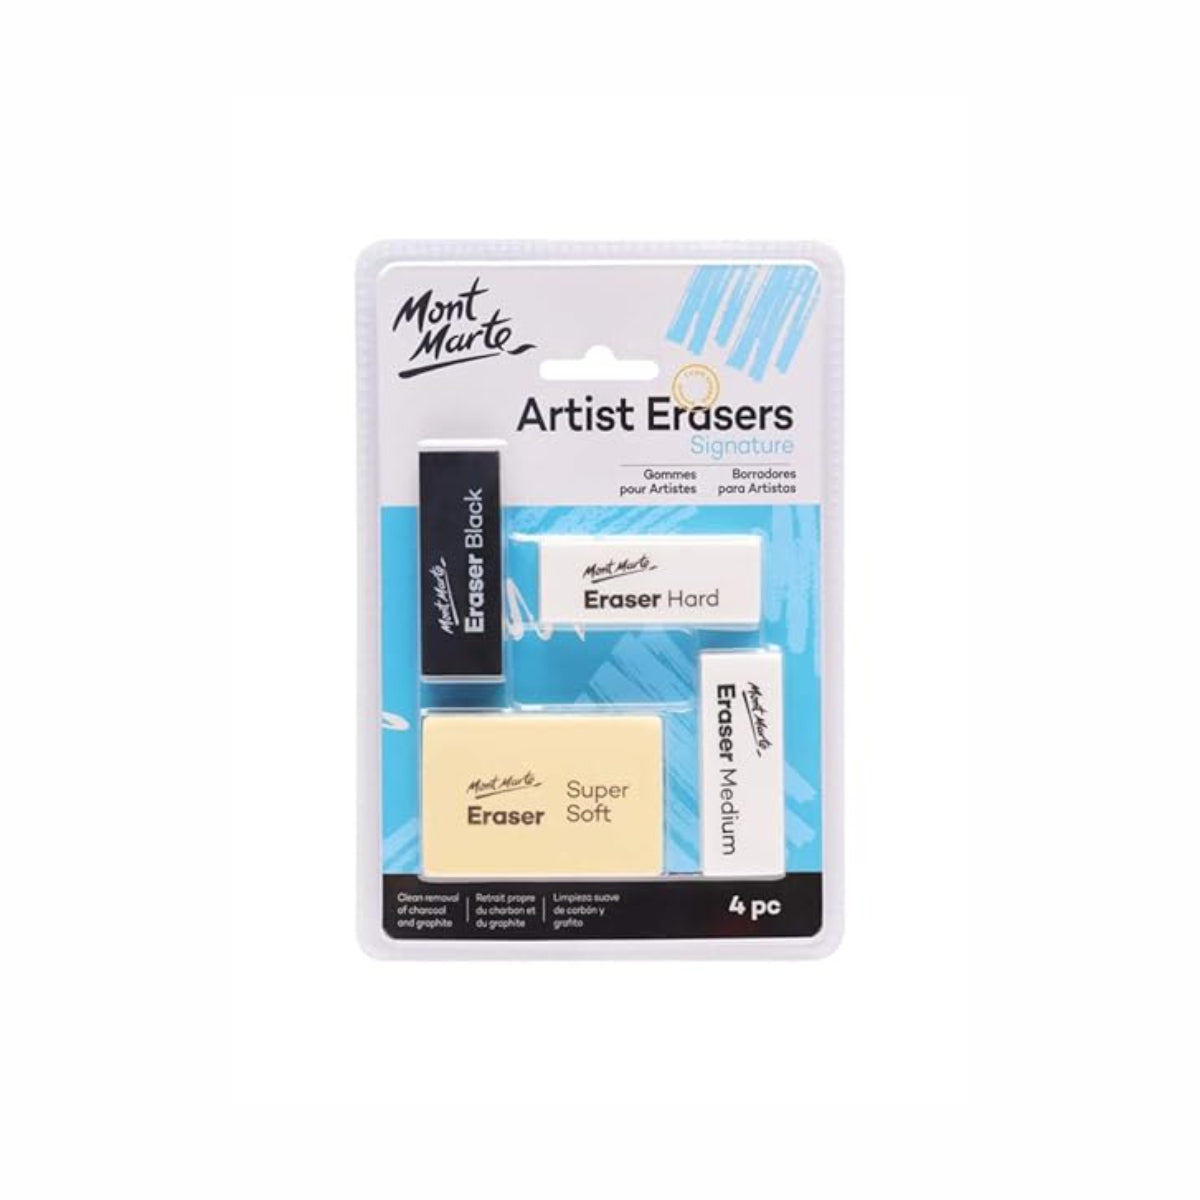 Mont Marte Artist Erasers - Set of 4